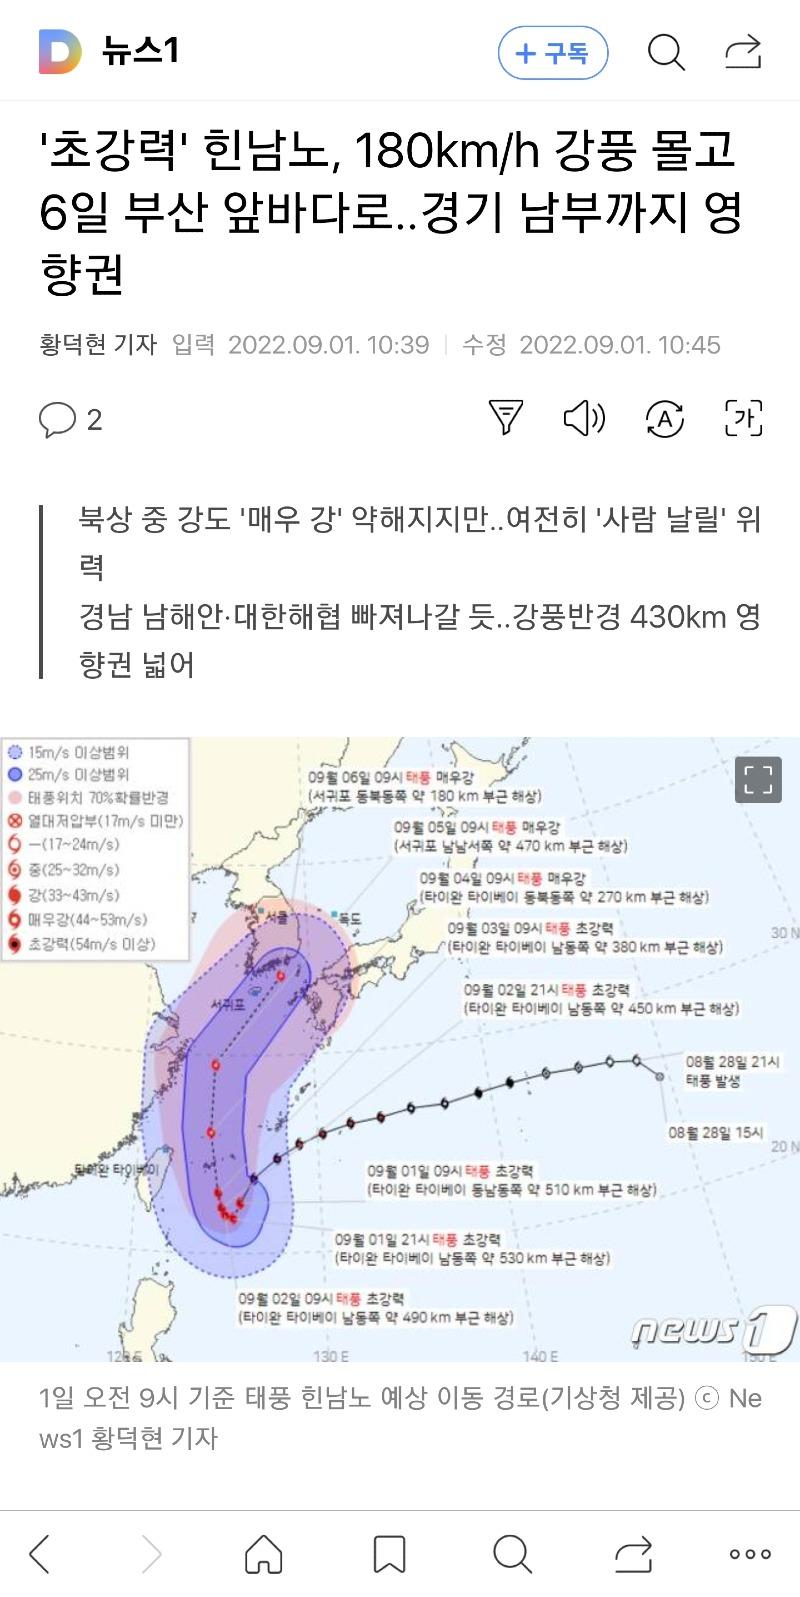 초강력'' 태풍 힌남노 경로 확정